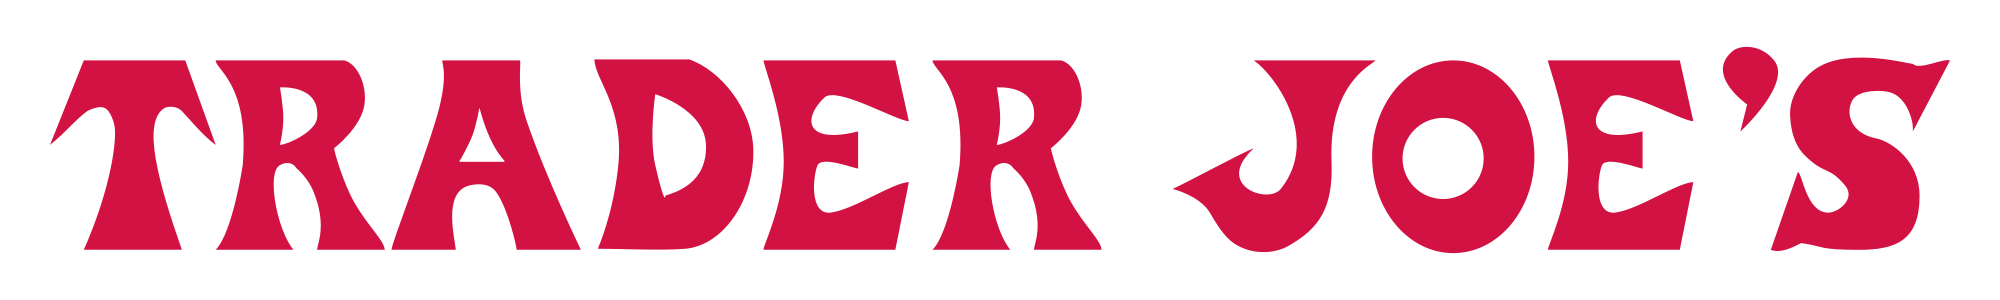 Image result for trader joe's logo